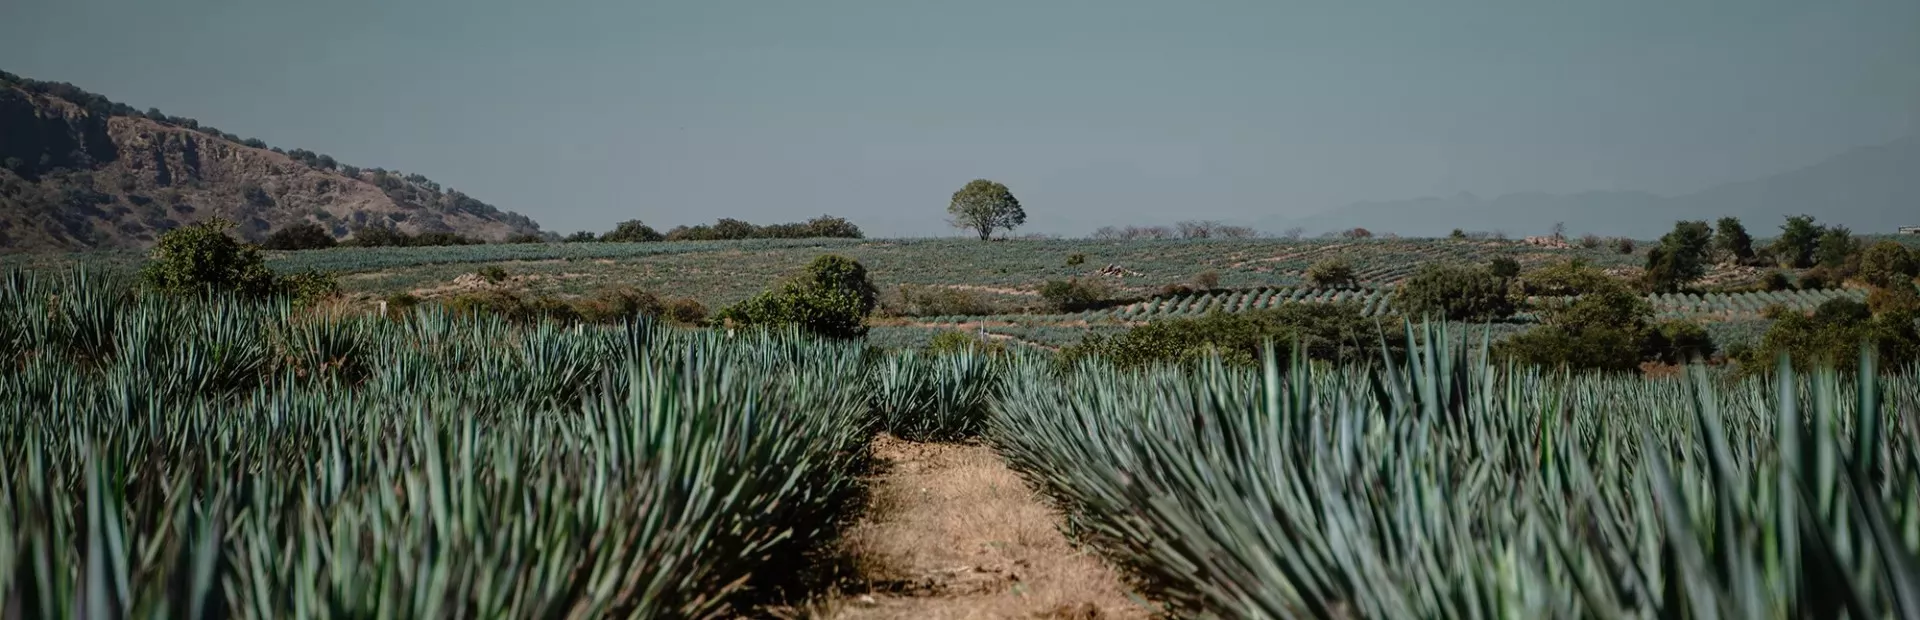 Imagen panorámica de campo de agave en México